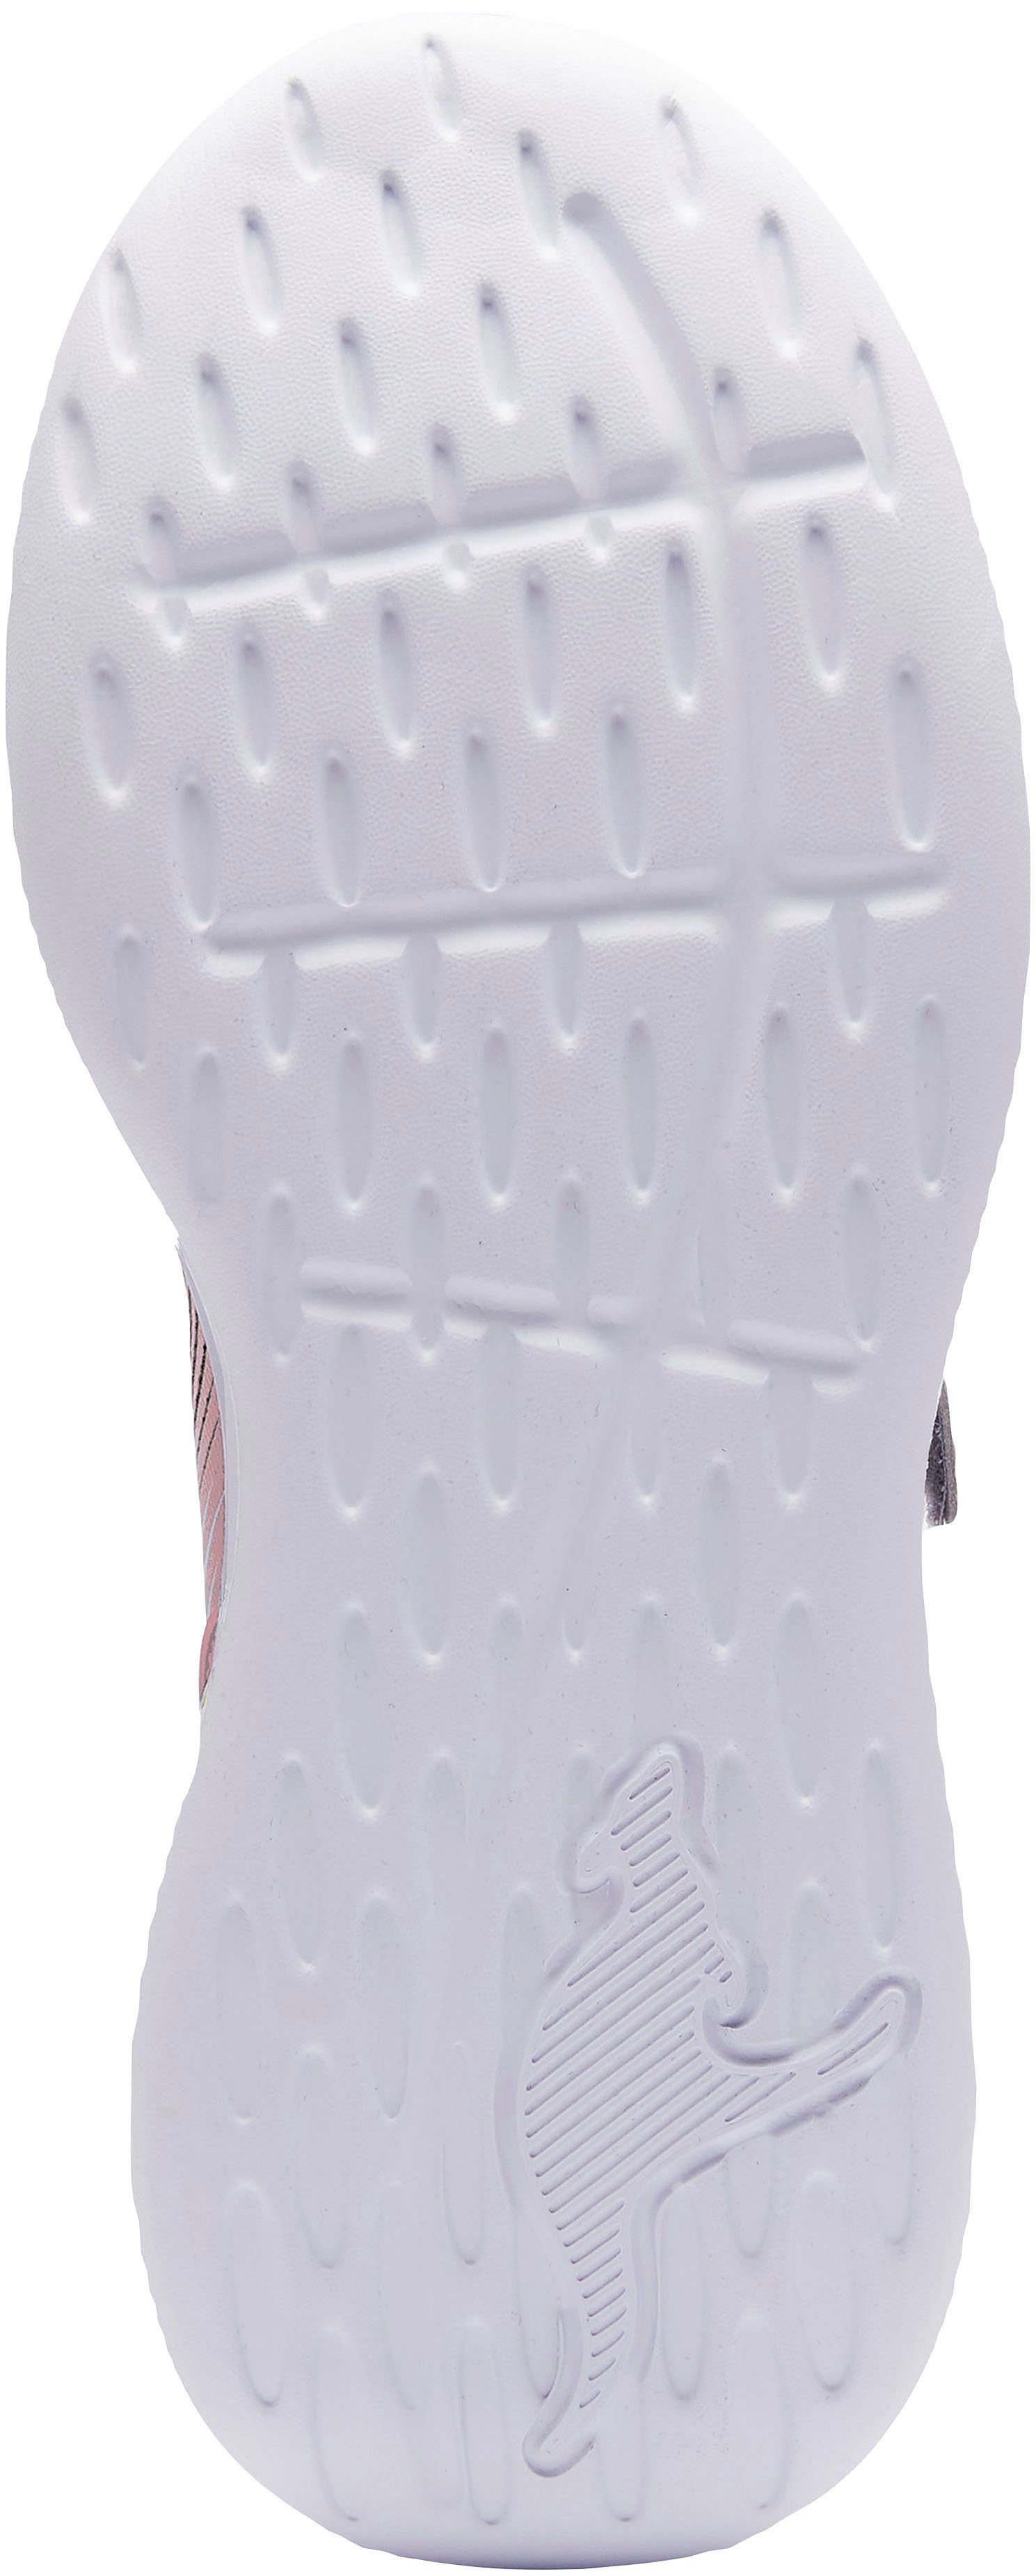 EV Sneaker mit navy-rosa KangaROOS KQ-Unique Klettverschluss